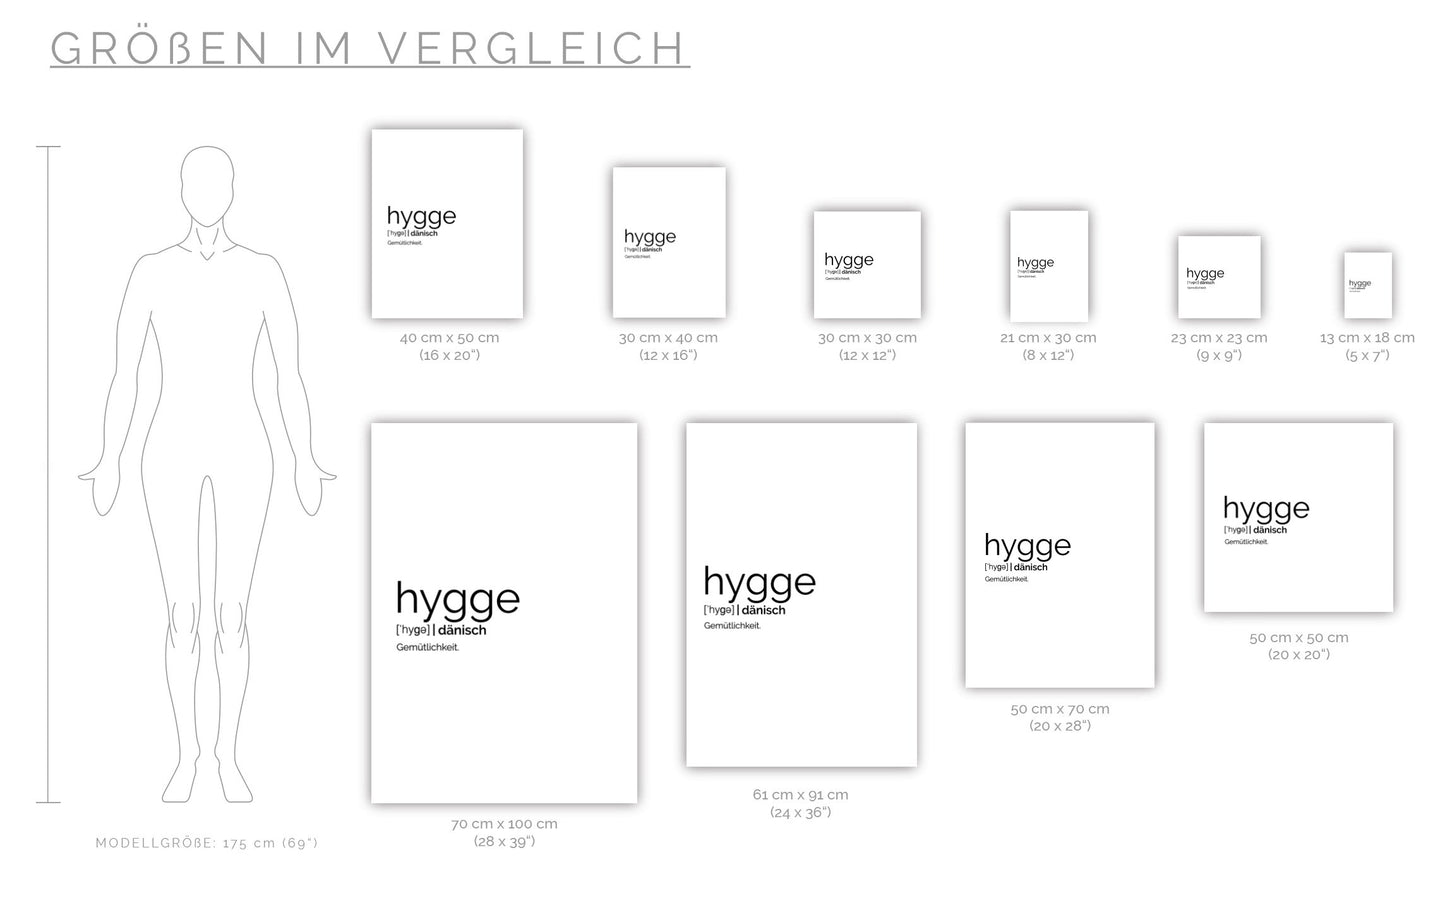 Poster Hygge